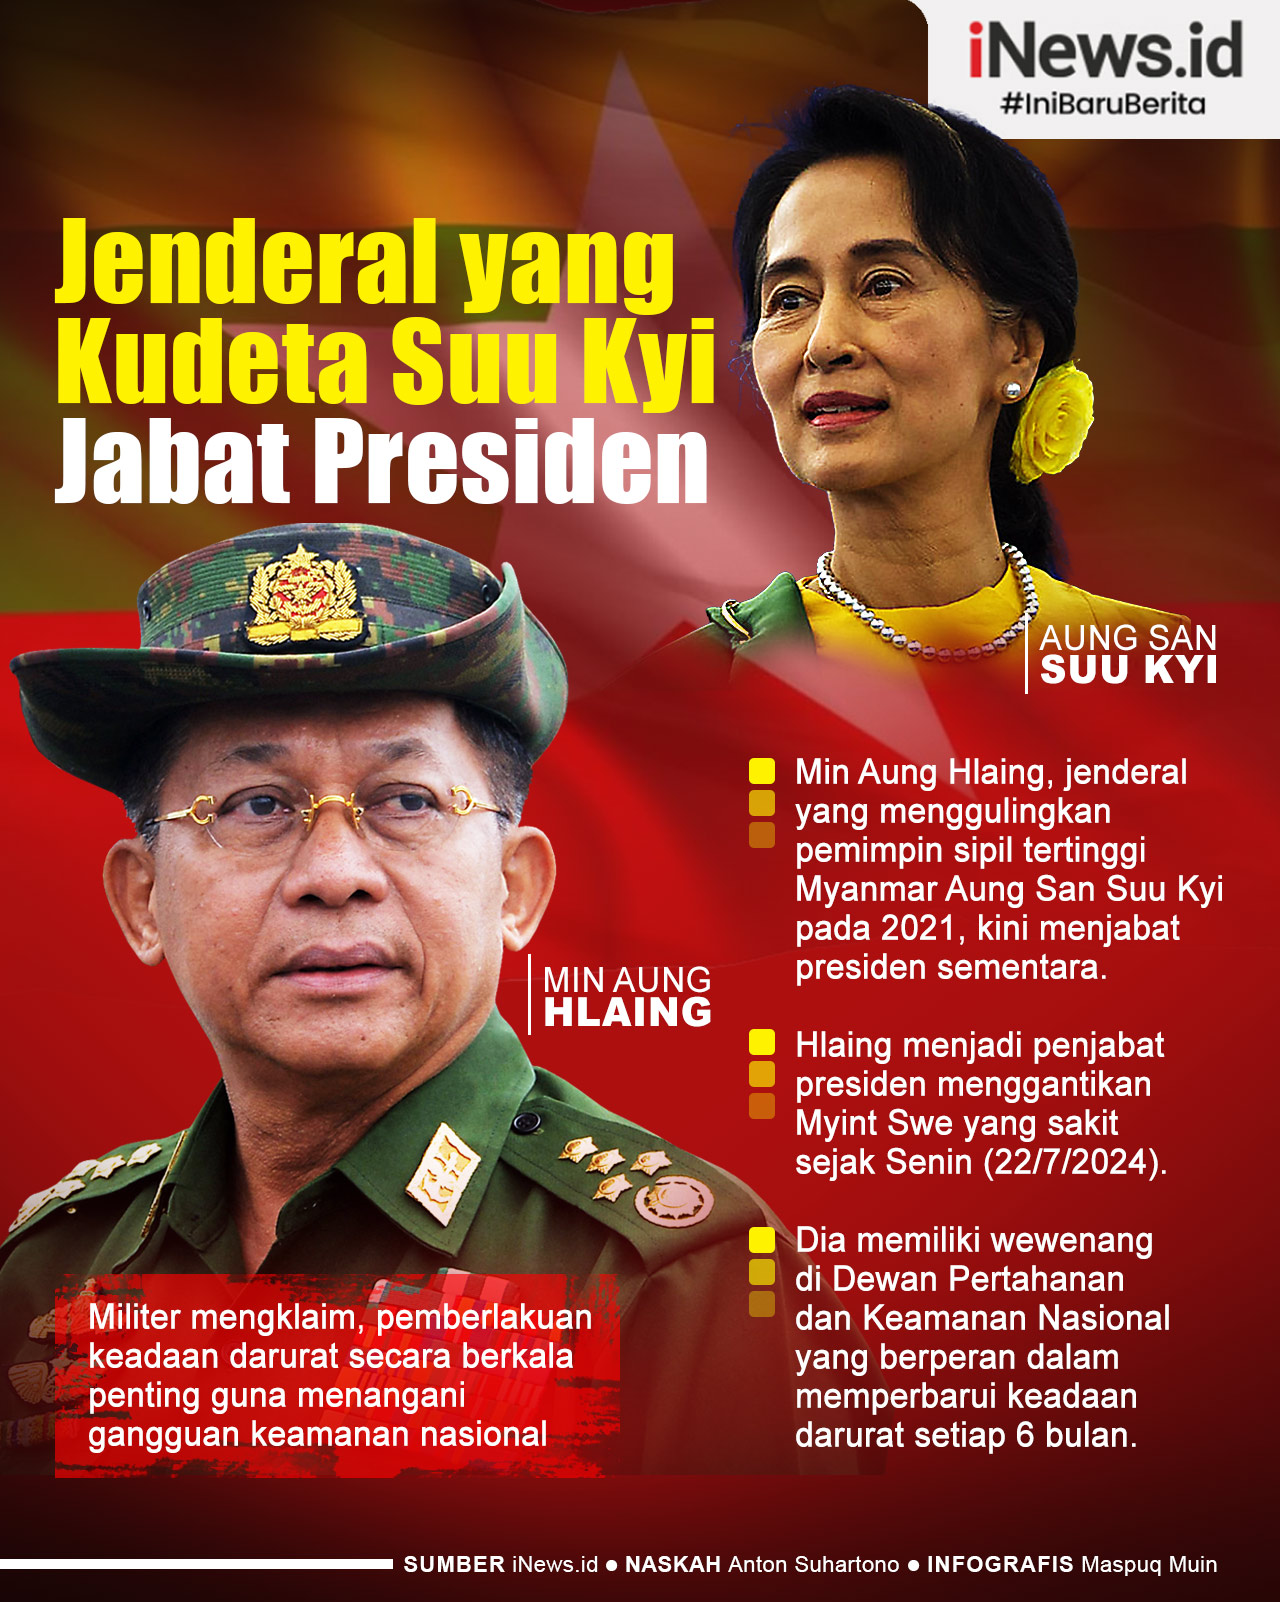 Infografis Jenderal yang Kudeta Aung San Suu Kyi Jabat Presiden Myanmar